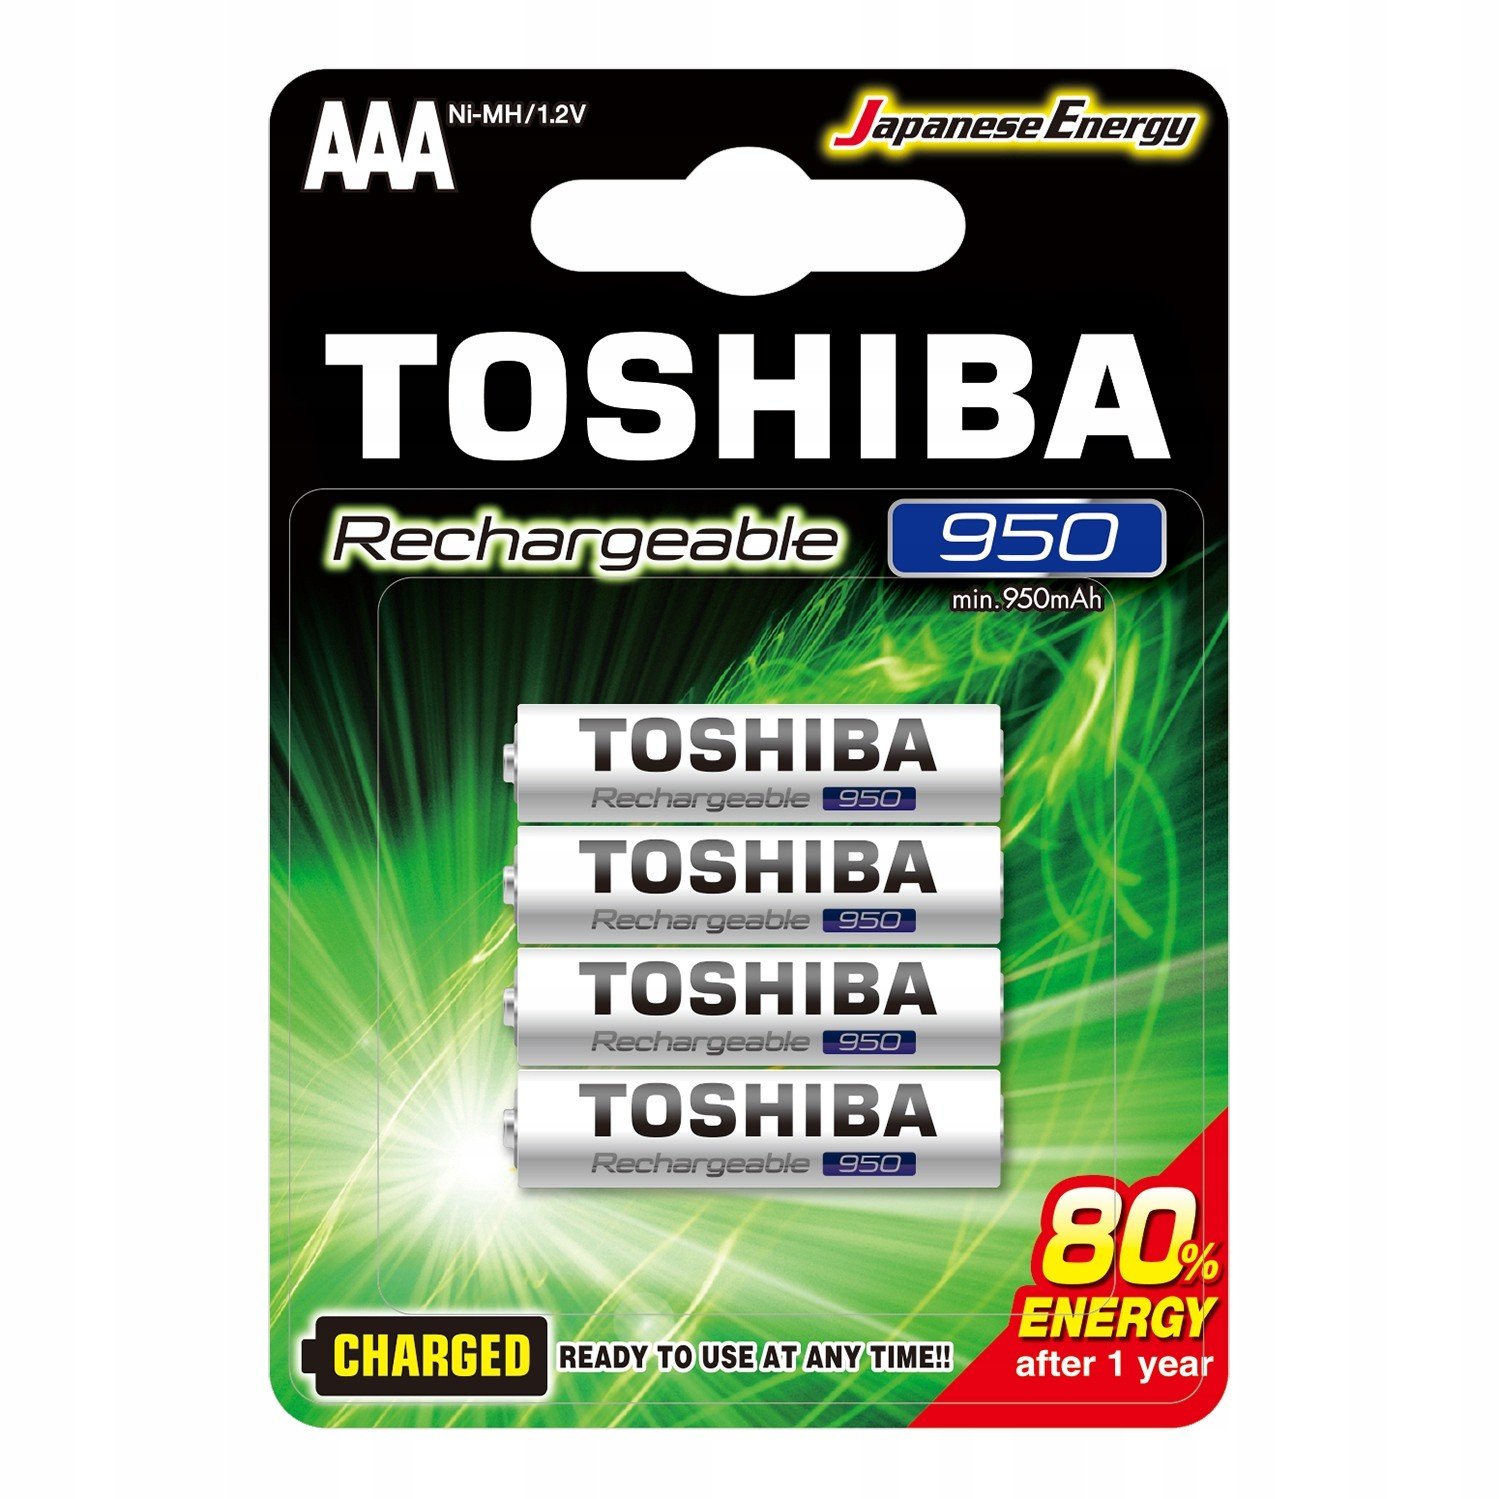 4x dobíjecí baterie Toshiba Aaa R3 950mAh Baterie